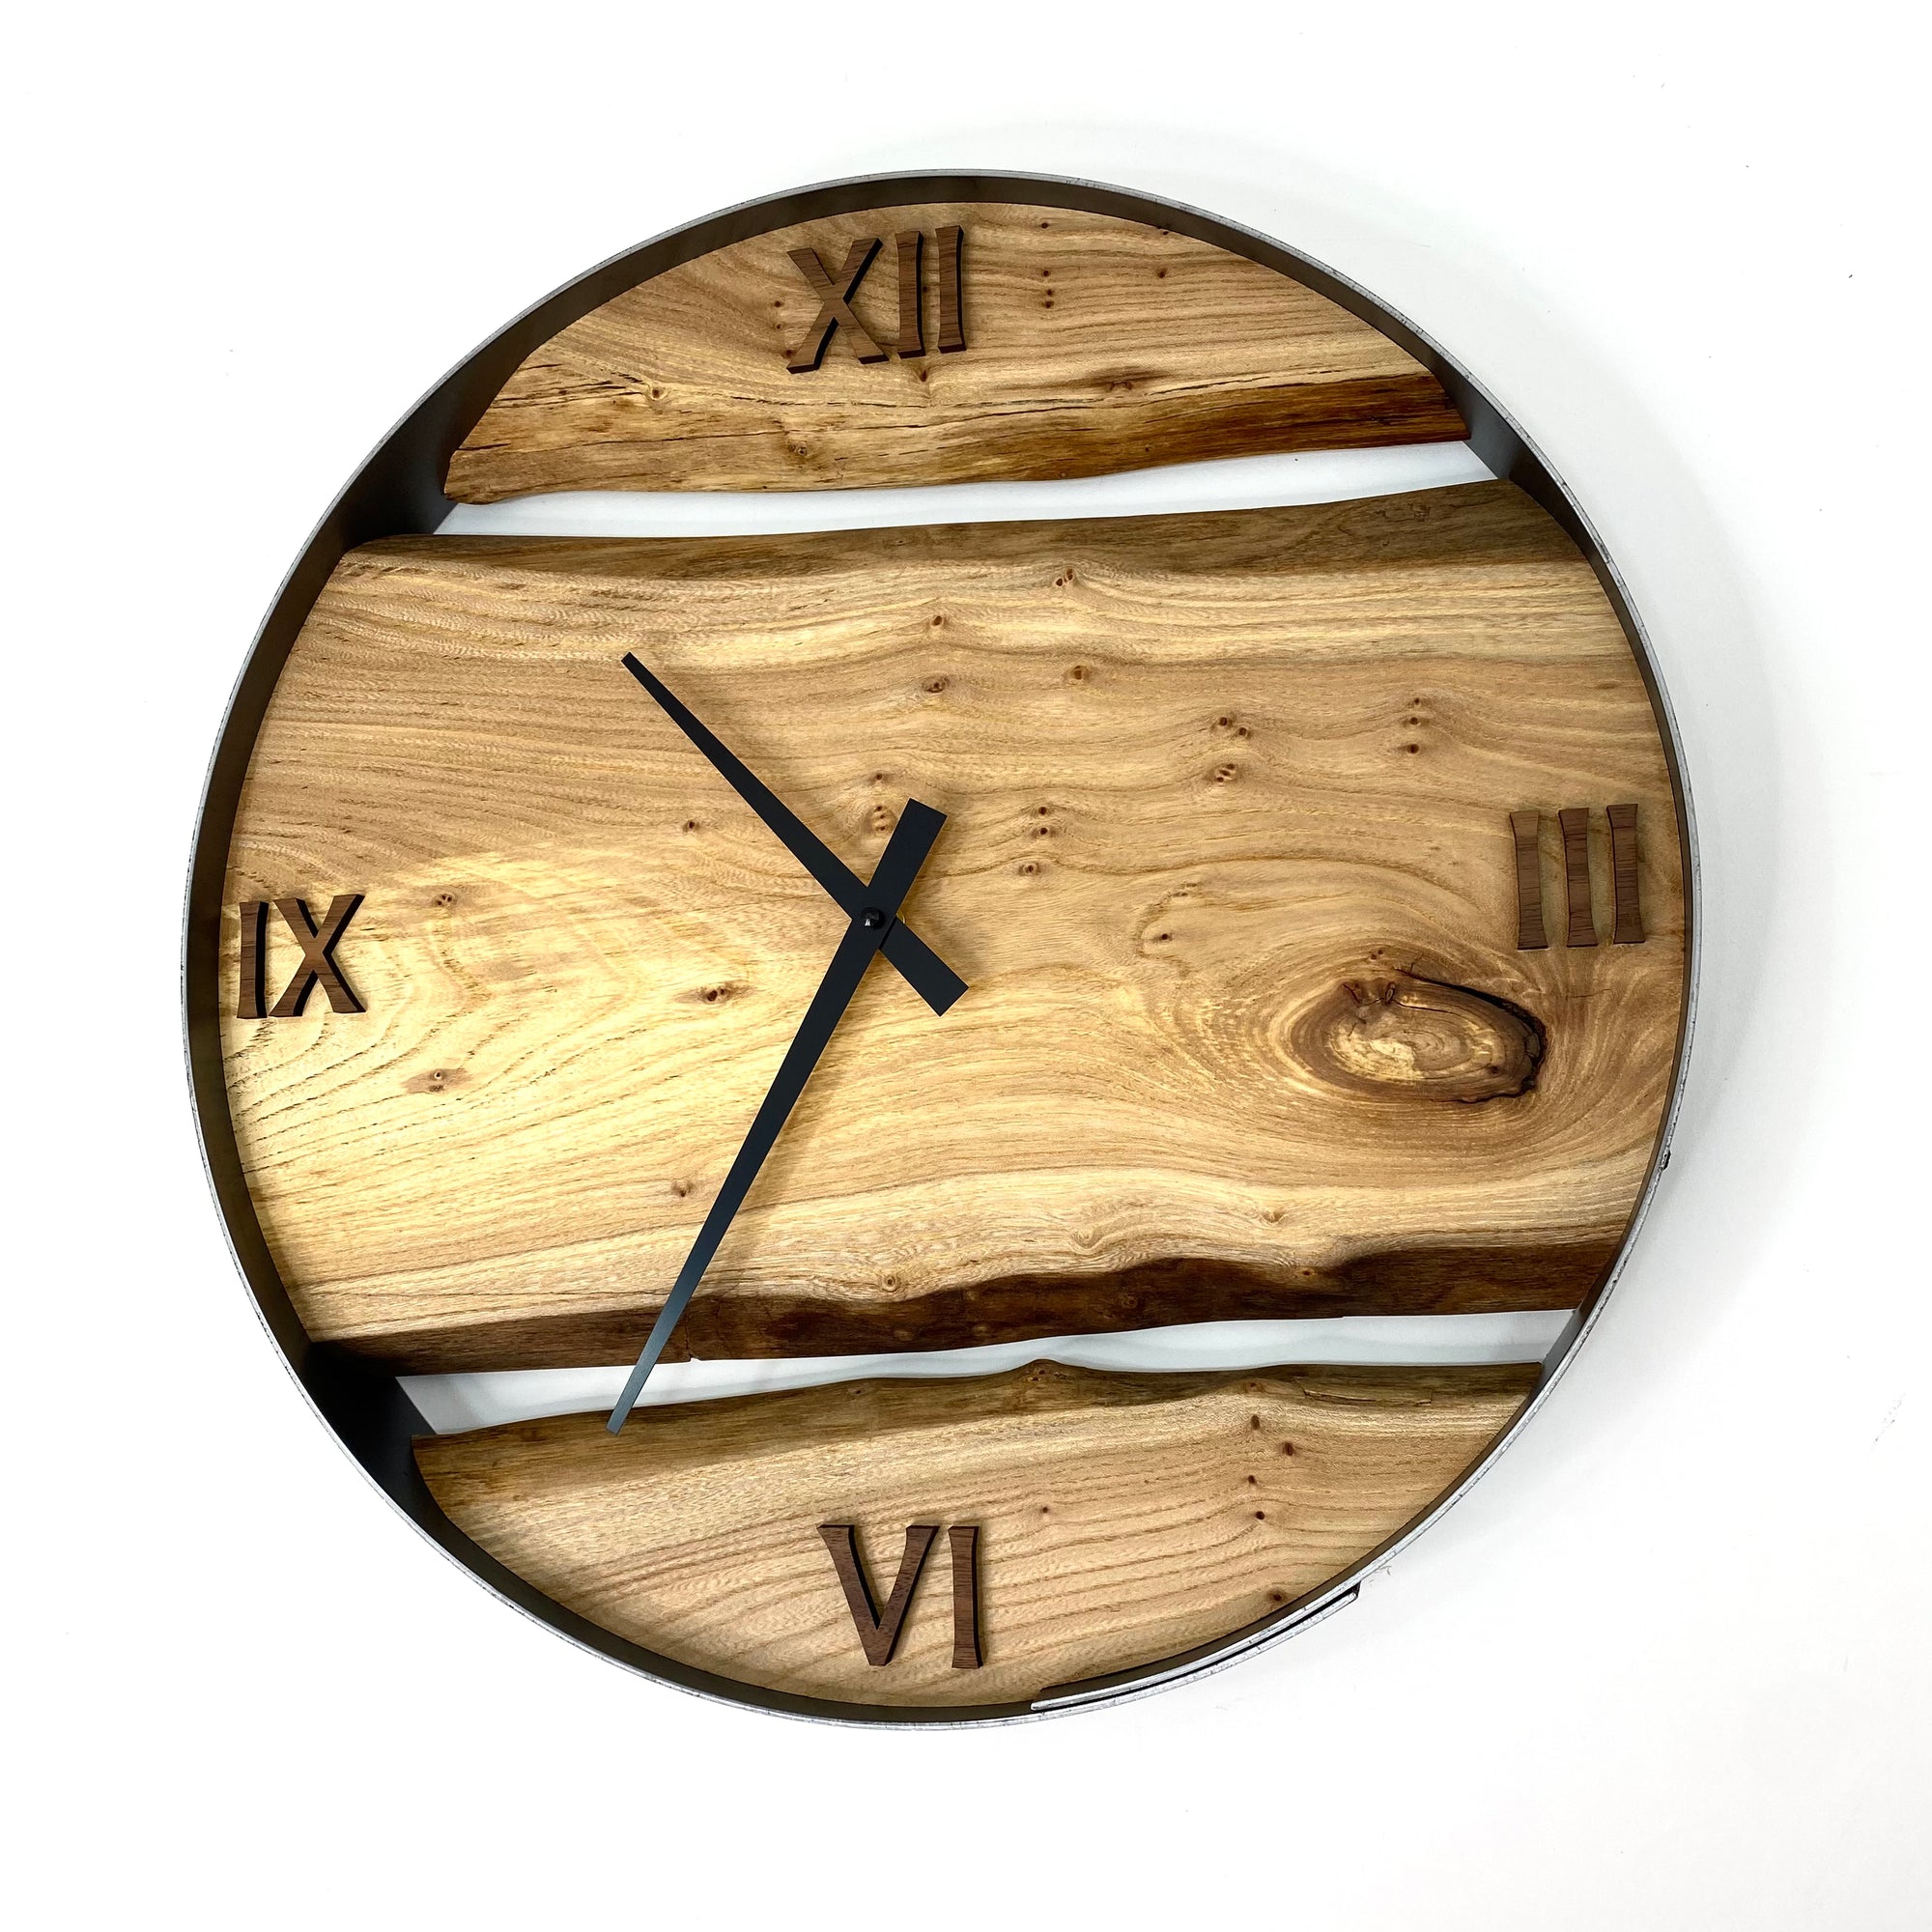 18” Elm Live Edge Wood Clock